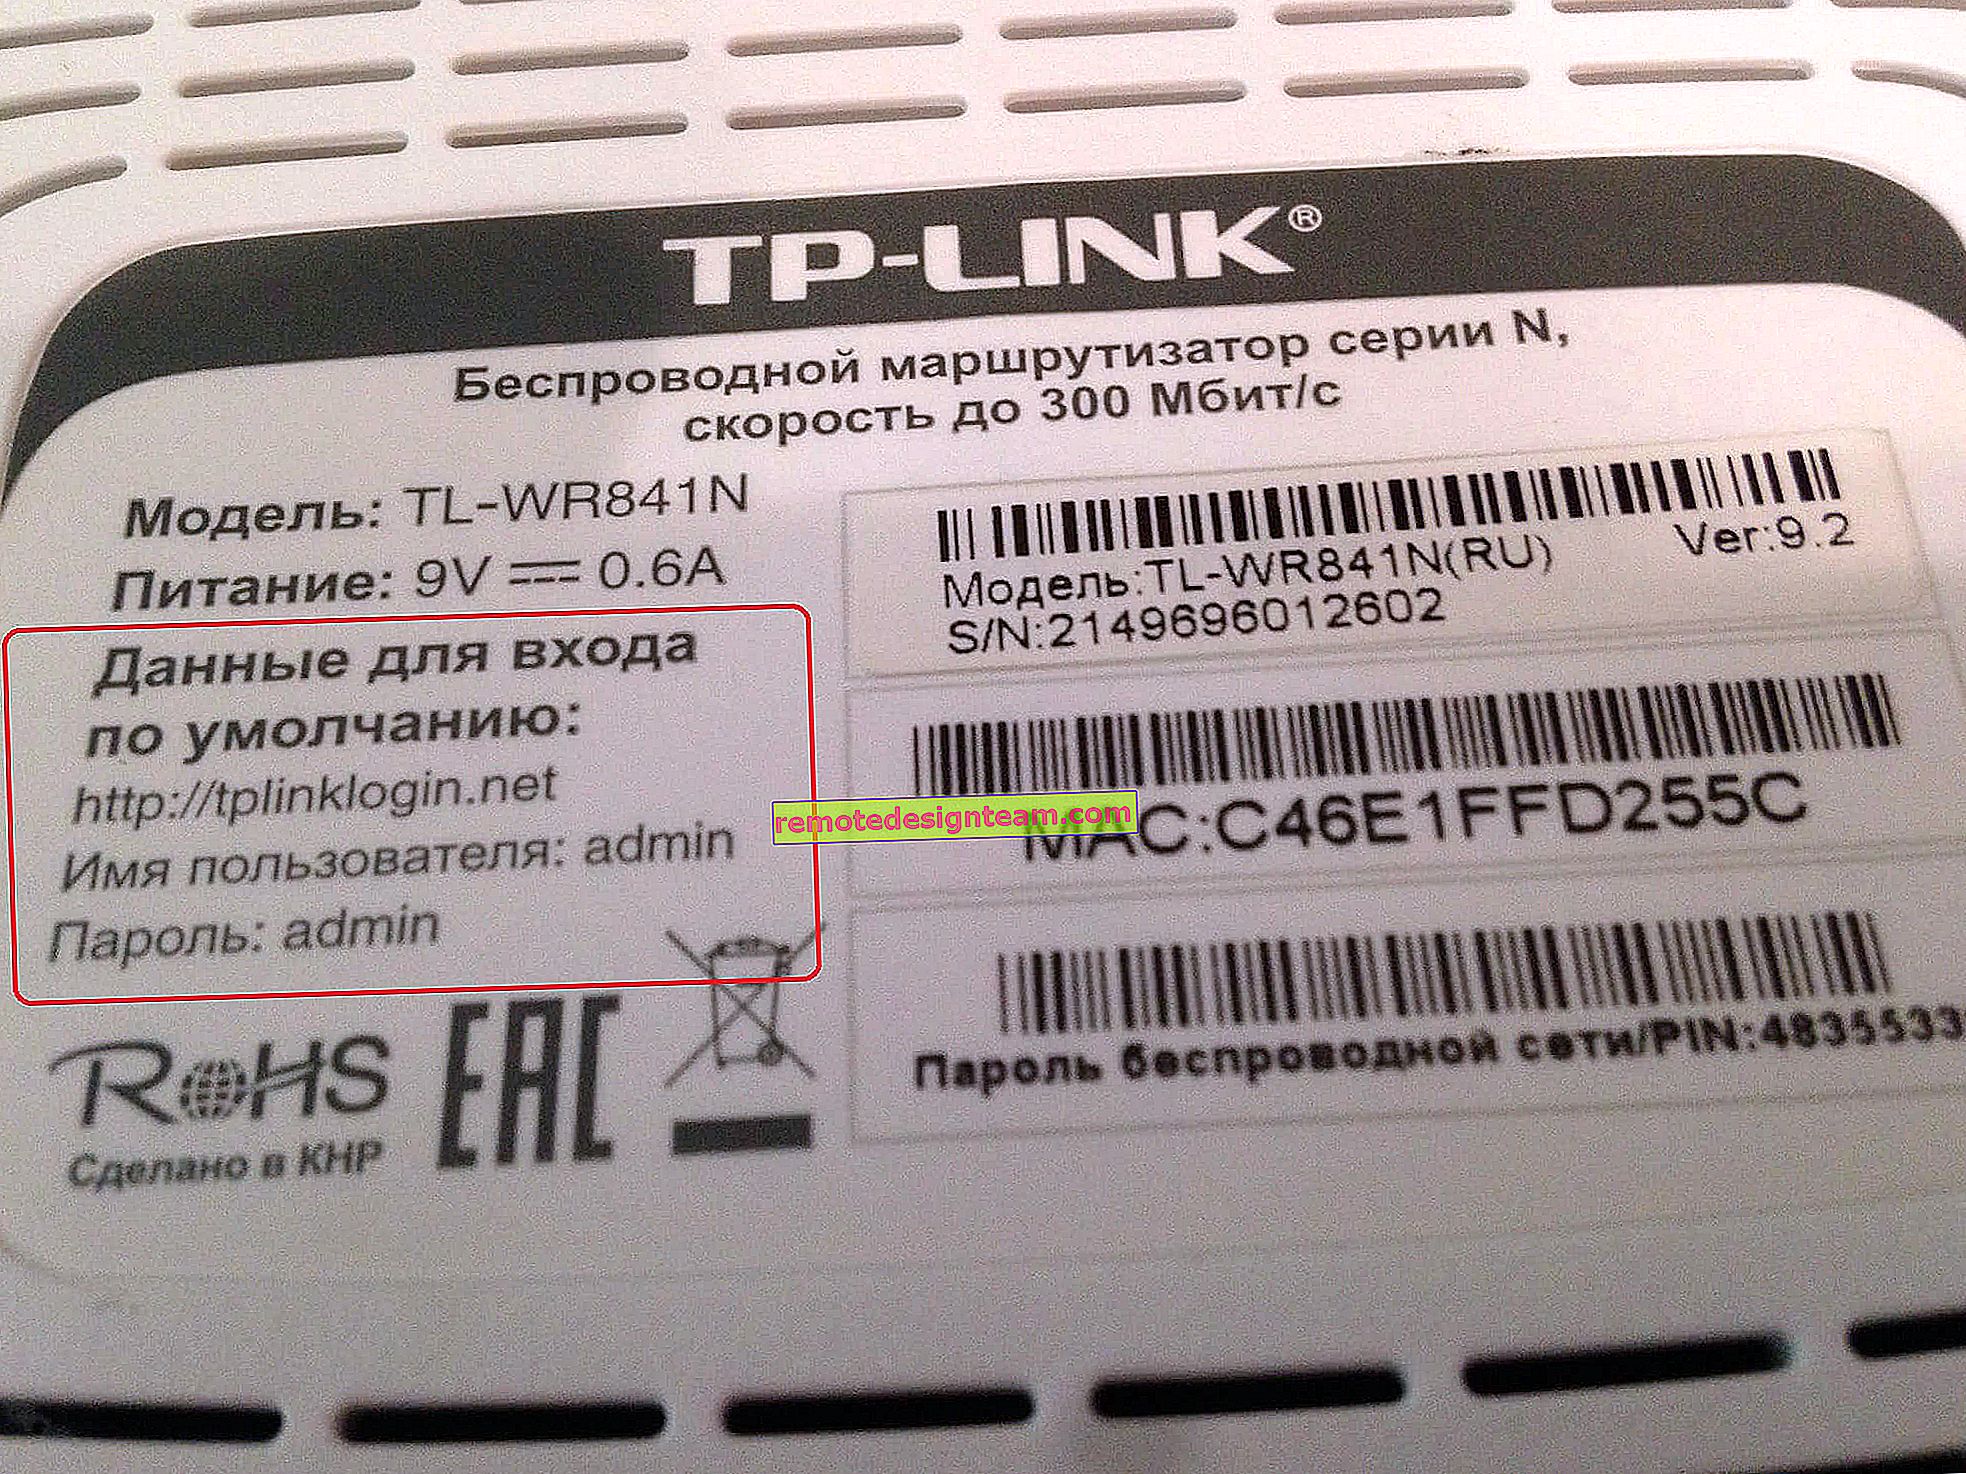 Bagaimana cara menukar kata laluan pada penghala Wi-Fi Tp-link TL-WR841N?